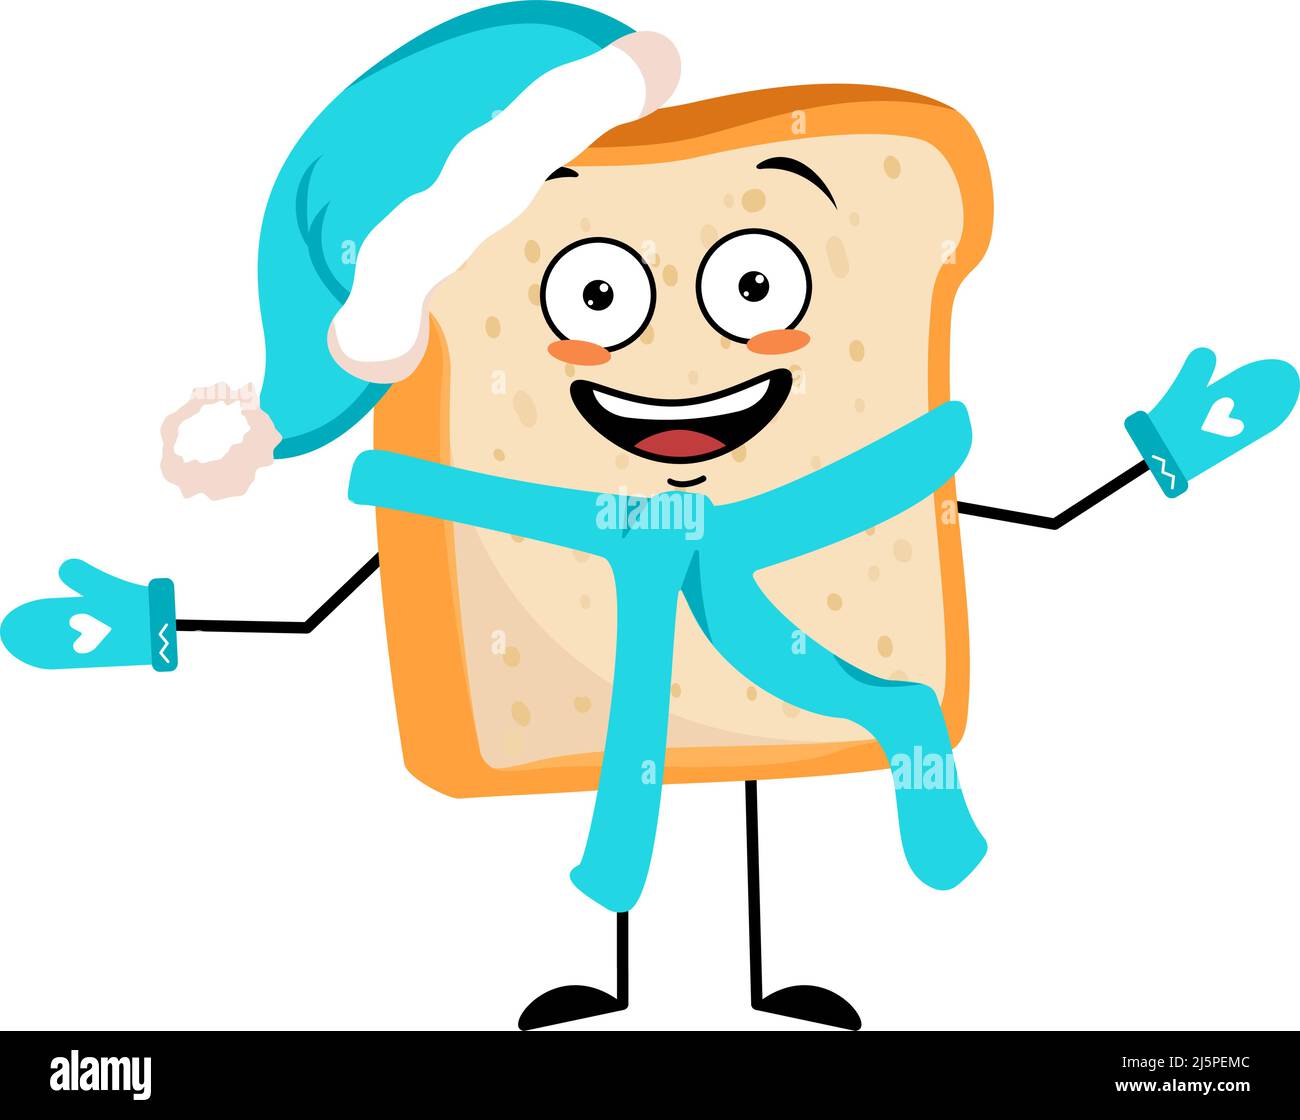 Niedliche Brot-Charakter in Santa Hut mit fröhlichen Emotionen, freudiges Gesicht, lächelnde Augen, Arme und Beine. Backende Person, hausgemachtes Gebäck mit lustigen Ausdruck. Vektorgrafik flach Stock Vektor